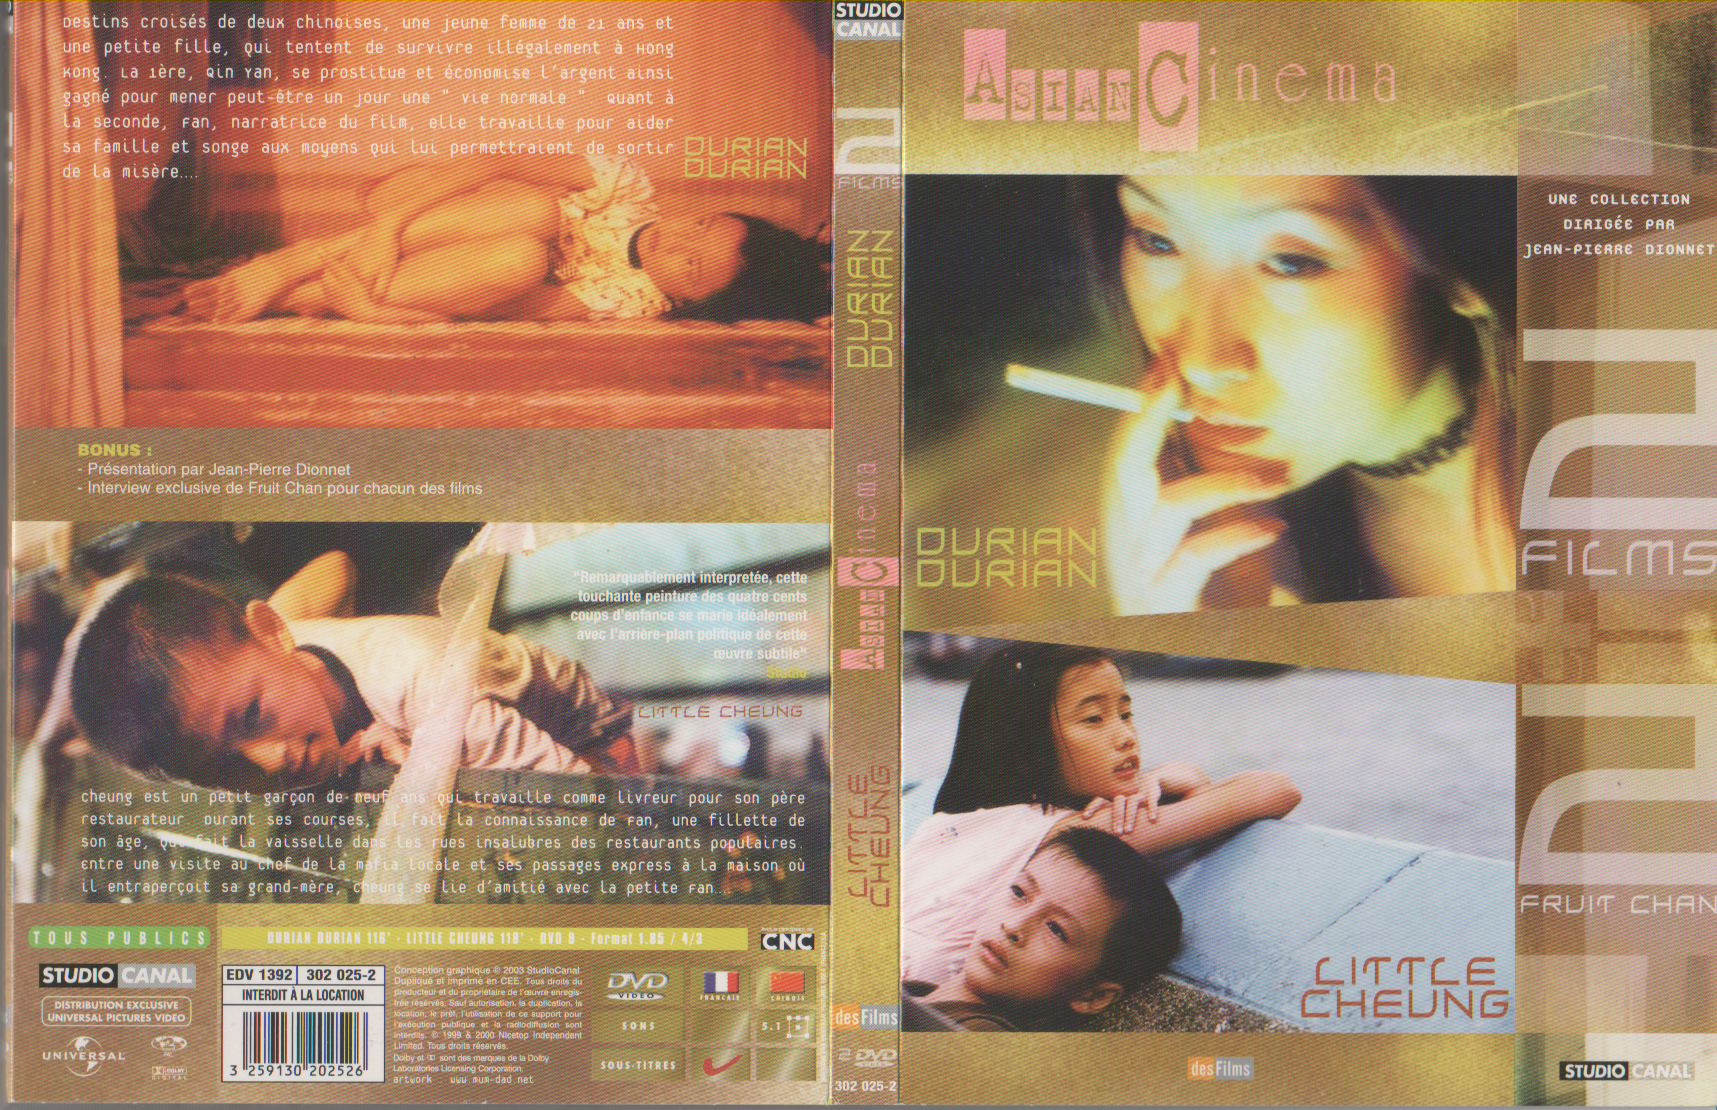 Jaquette DVD Durian durian + Little cheung